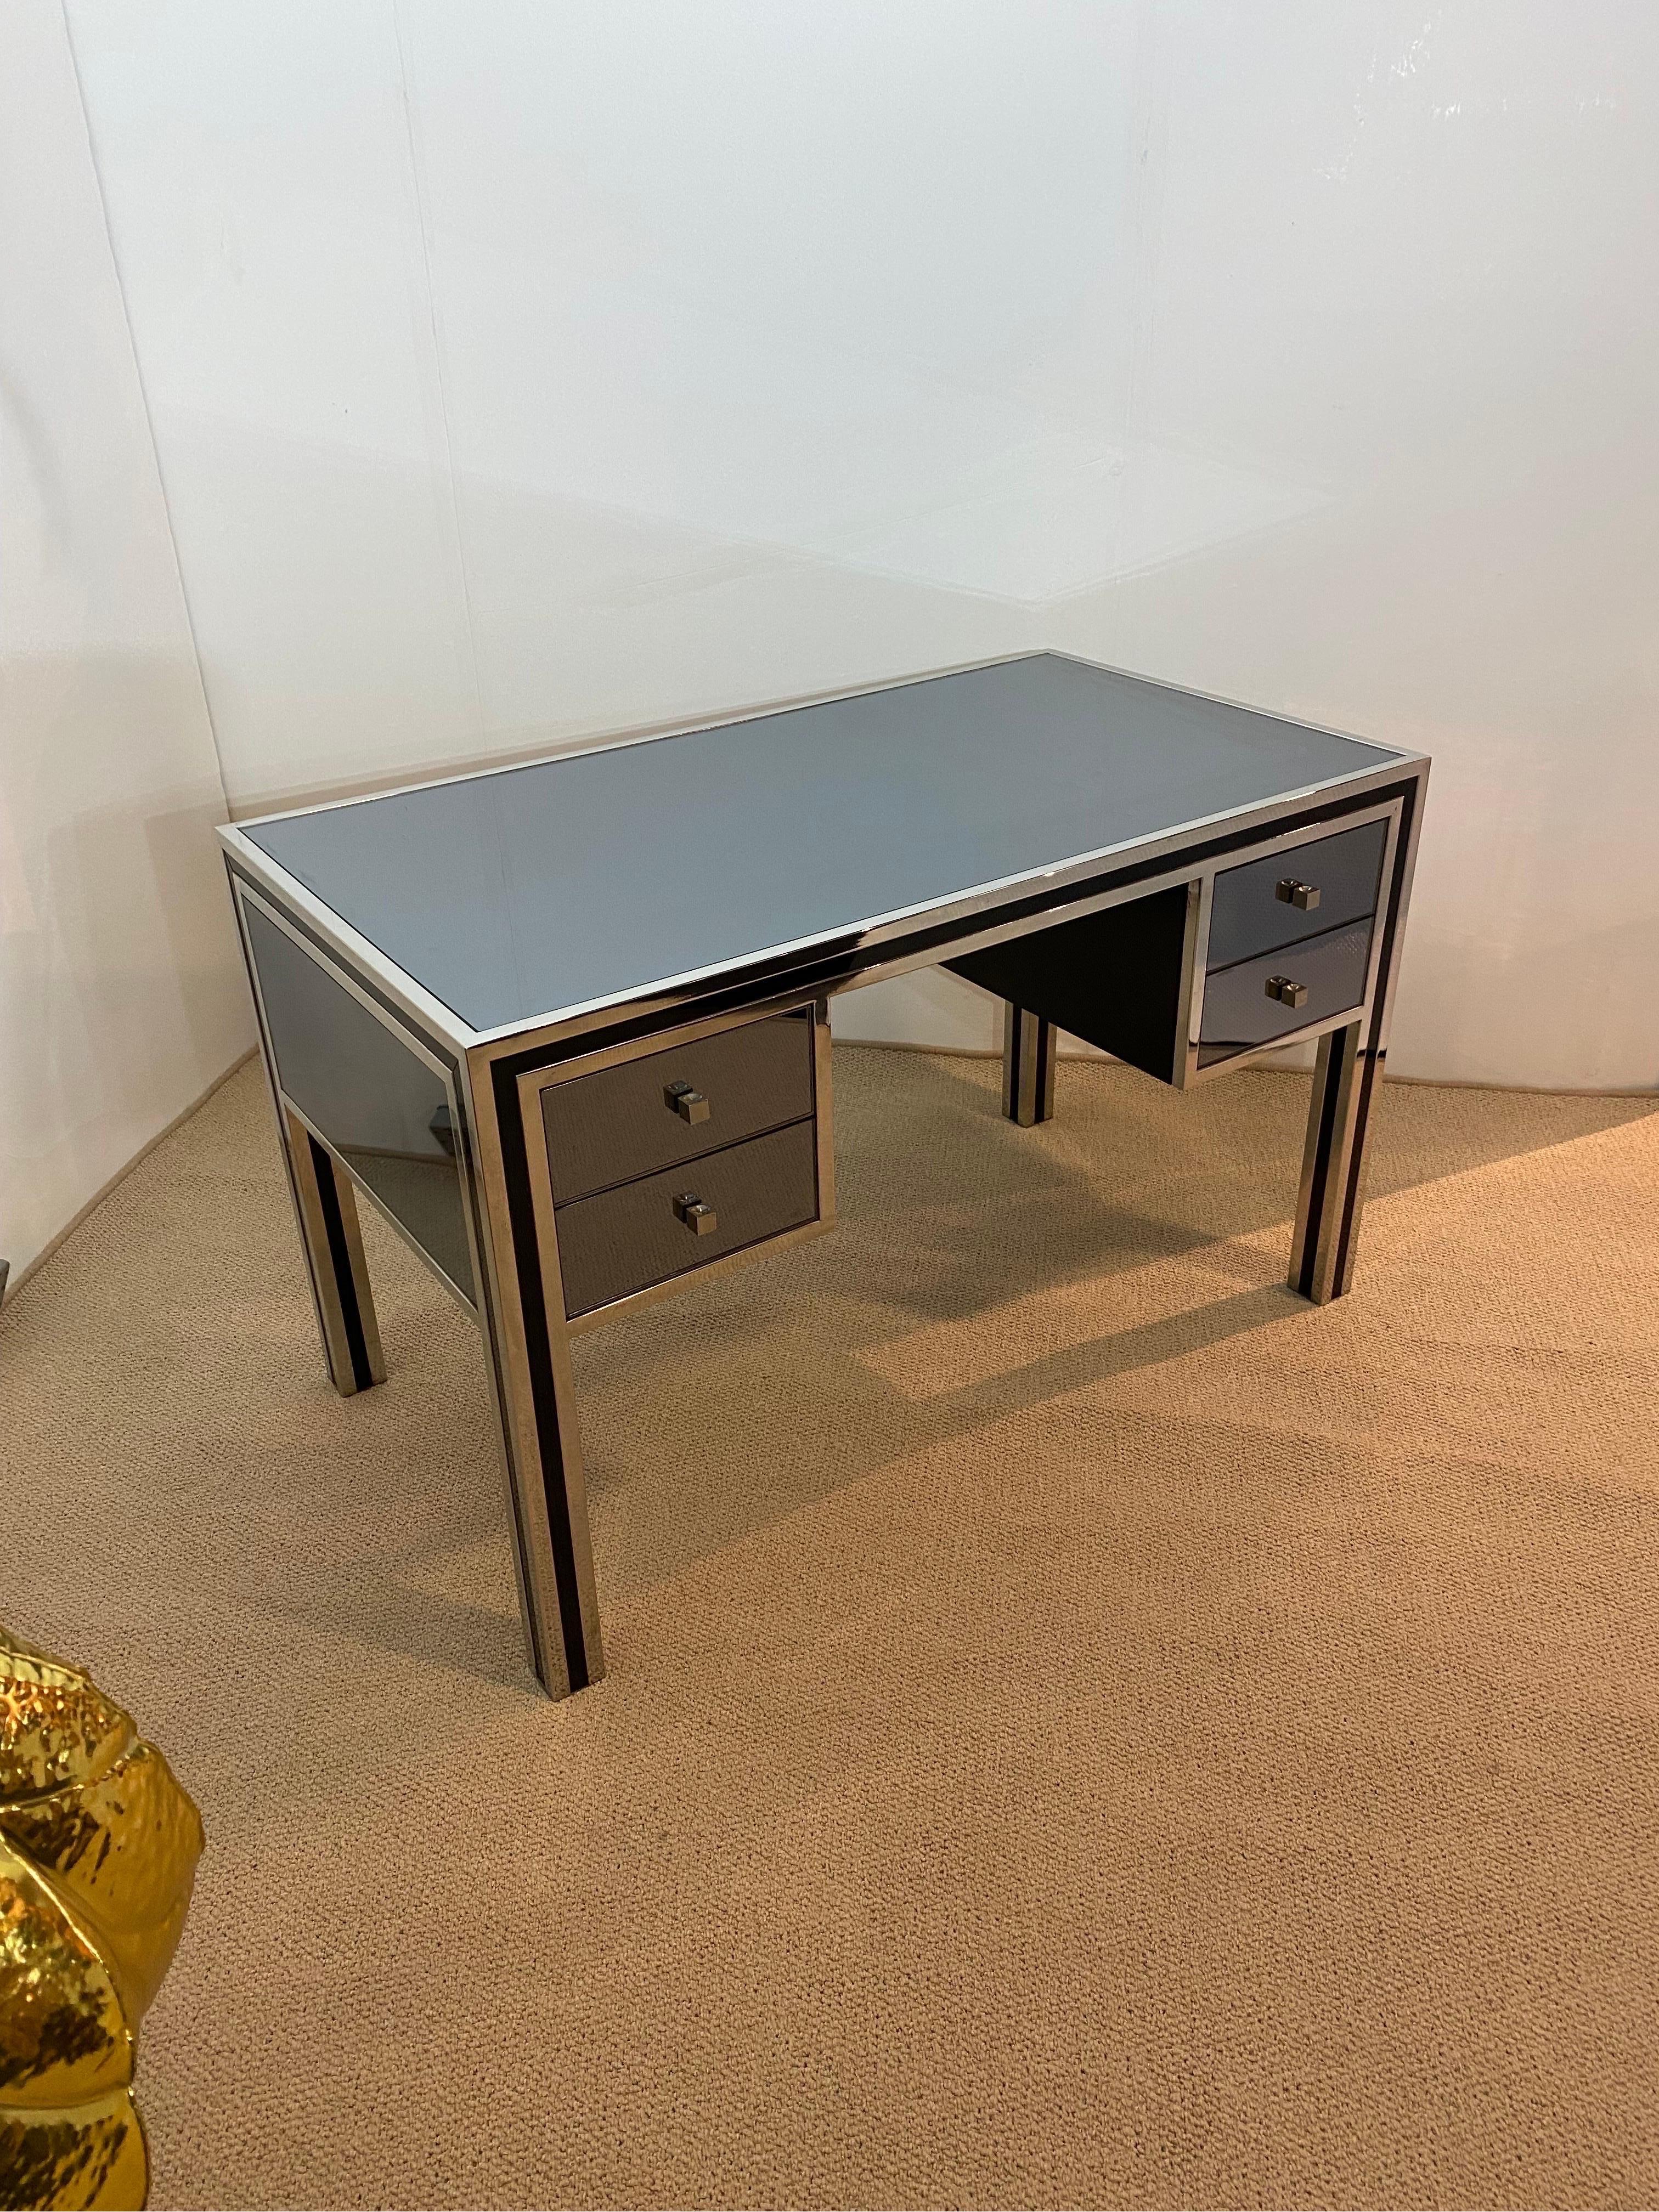 Ein äußerst seltener Schreibtisch des Designers Michele Pigneres aus den 1970er Jahren.
Dieser Schreibtisch weist alle Merkmale seiner Entwürfe auf, wie z.B. die Schubladenauszüge, die verchromte Umrandung und natürlich den geräucherten Spiegel.